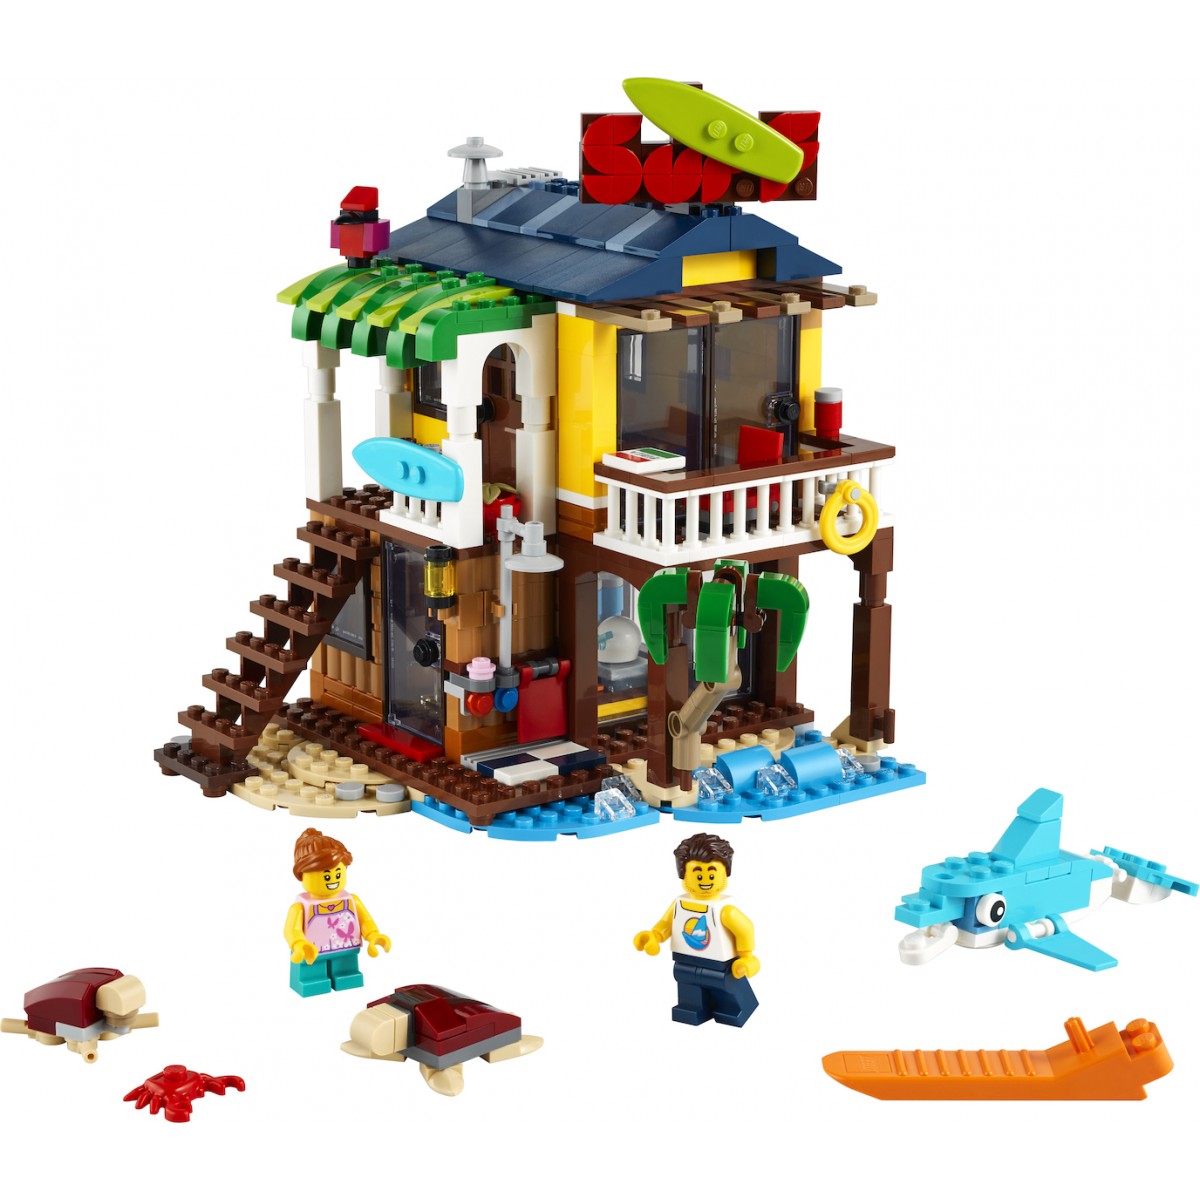 LEGO CREATOR 31118 SURFER BEACH HOUSE